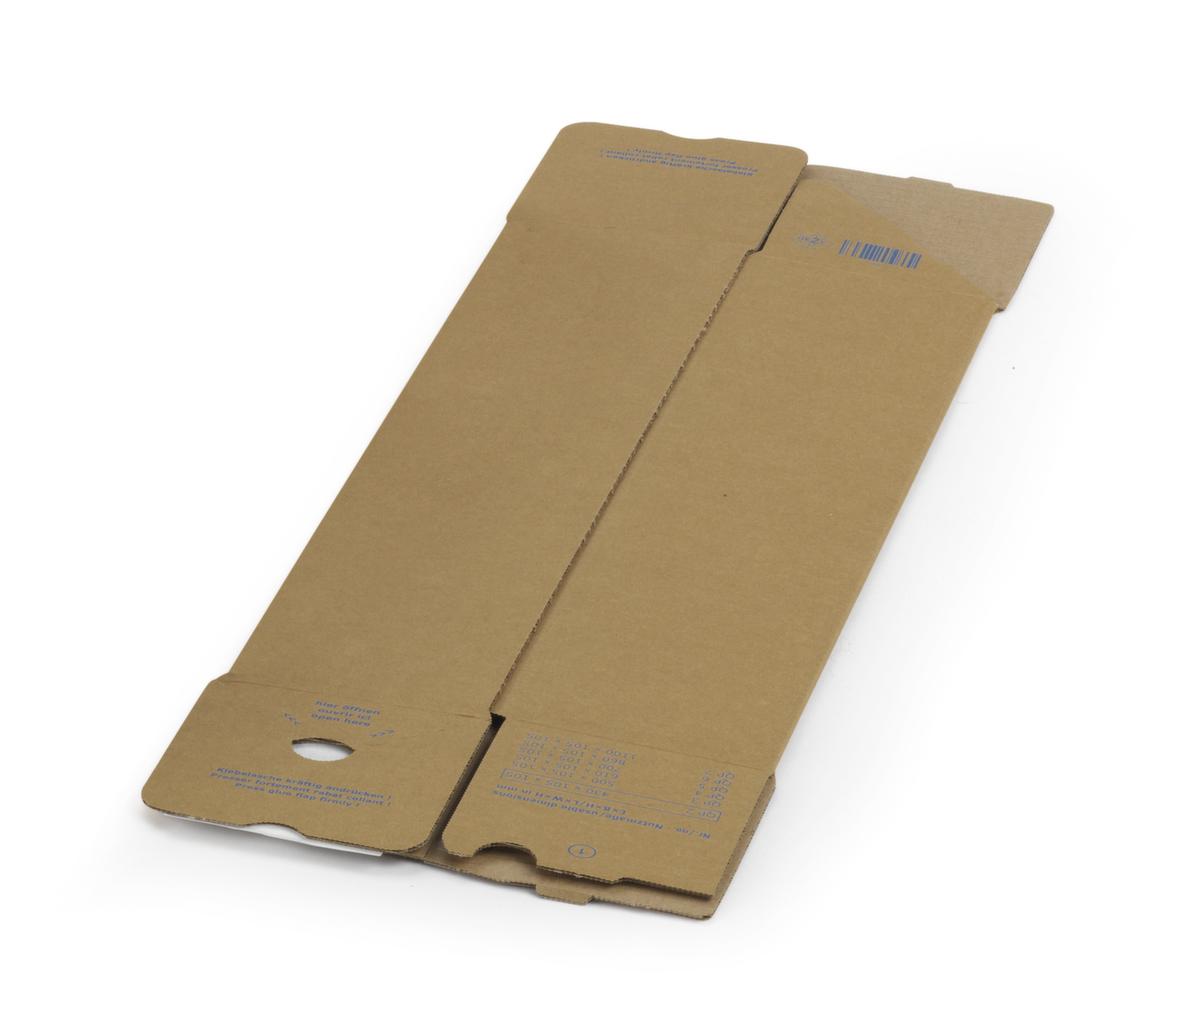 Caisse carton pliante longue QUATTROPACK avec fermeture autocollante, 1 onde, 610 x 105 x 105 mm  ZOOM